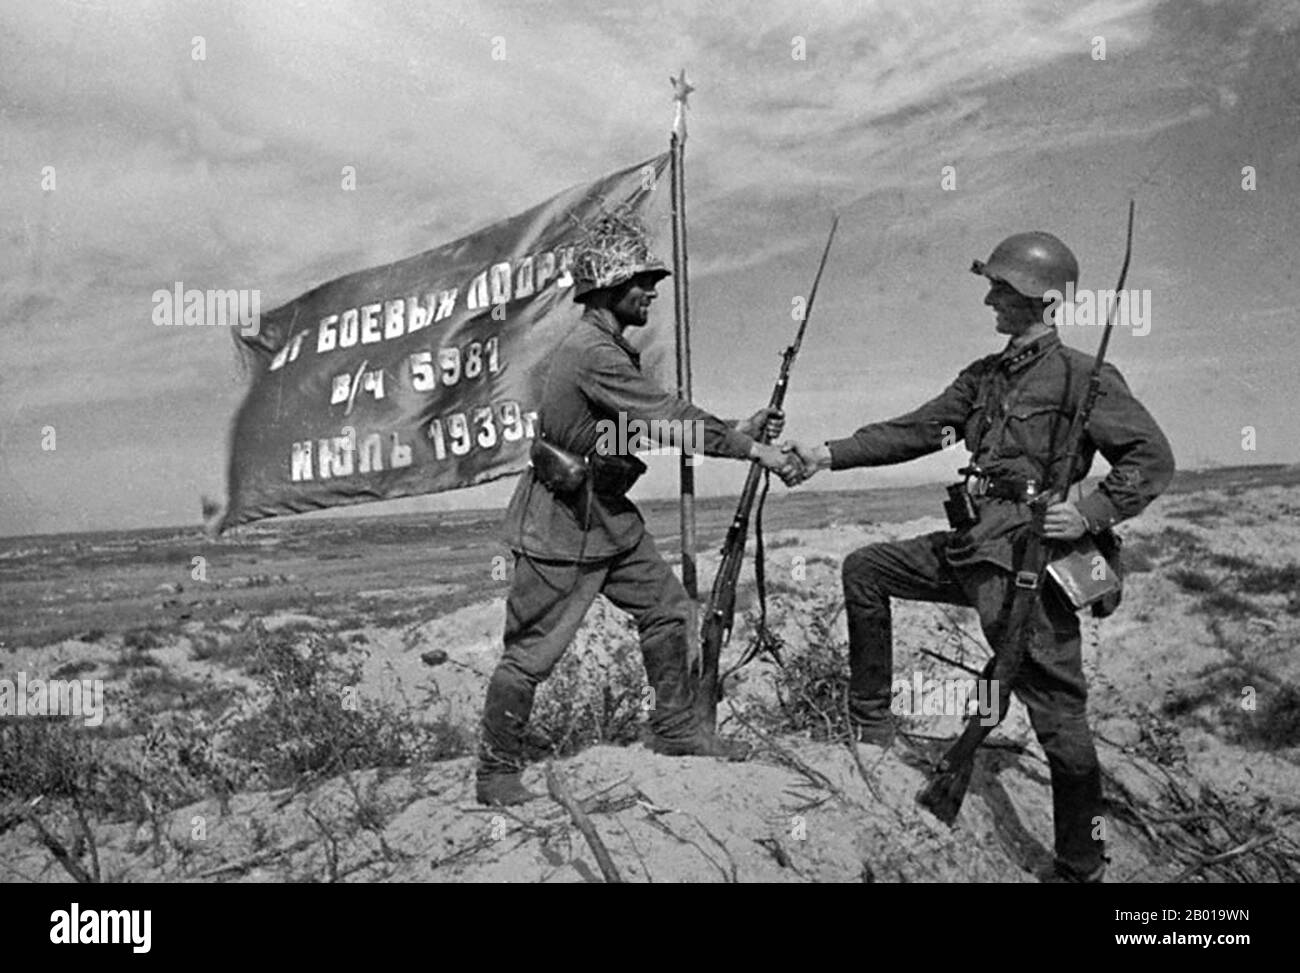 Mongolie: Les troupes soviétiques victorieuses lèvent un drapeau régimentaire rouge à Khalkhin Gol. Photo de Pavel Troshkin (1909-1944), 1939. Les batailles de Khalkhin Gol ont été les engagements décisifs de la guerre frontalière indéclarée entre l'Union soviétique, la Mongolie et le Japon en 1939. Ils ont été nommés d'après la rivière Khalkhin Gol, qui traverse le champ de bataille. Au Japon, la bataille décisive du conflit est connue sous le nom d'incident de Nomonhan (Nomonhan Jiken) après un village voisin, et a été une défaite totale pour leur armée. Banque D'Images